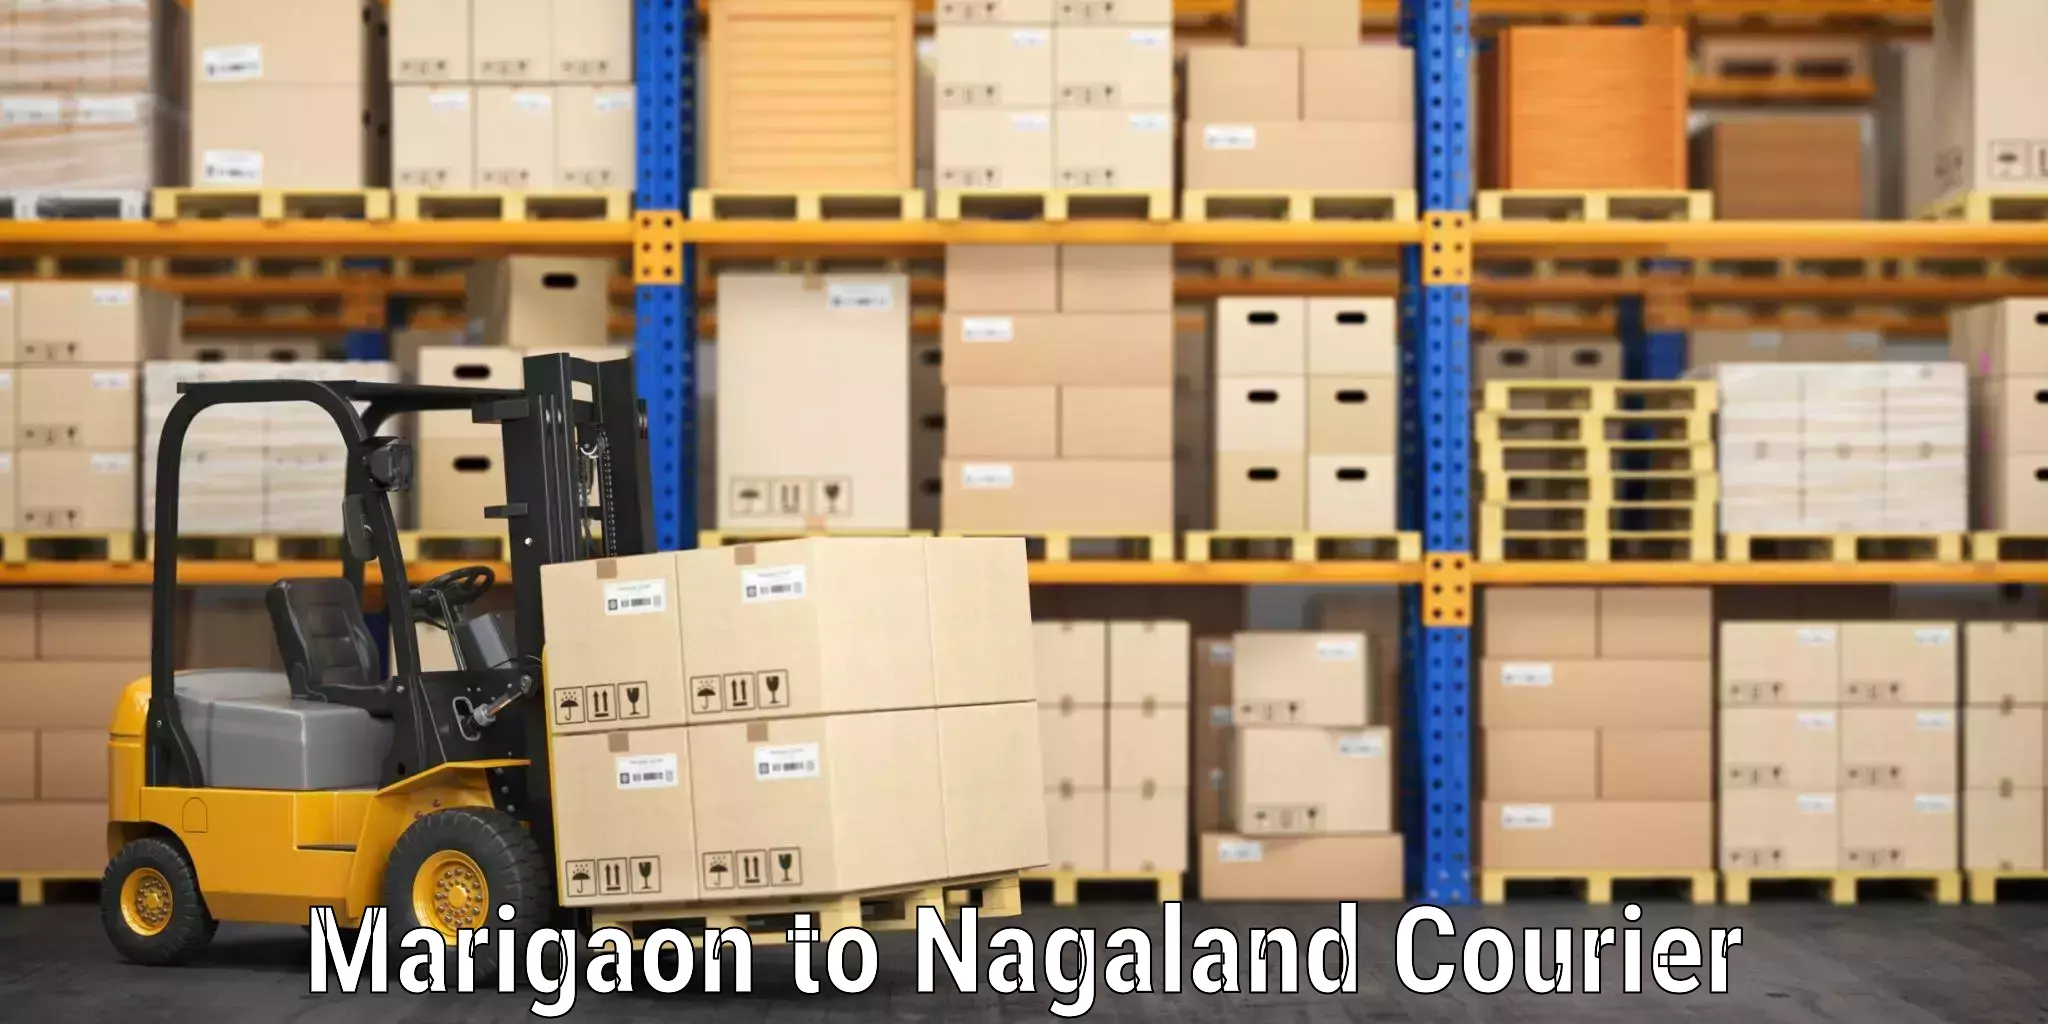 Luggage forwarding service Marigaon to NIT Nagaland